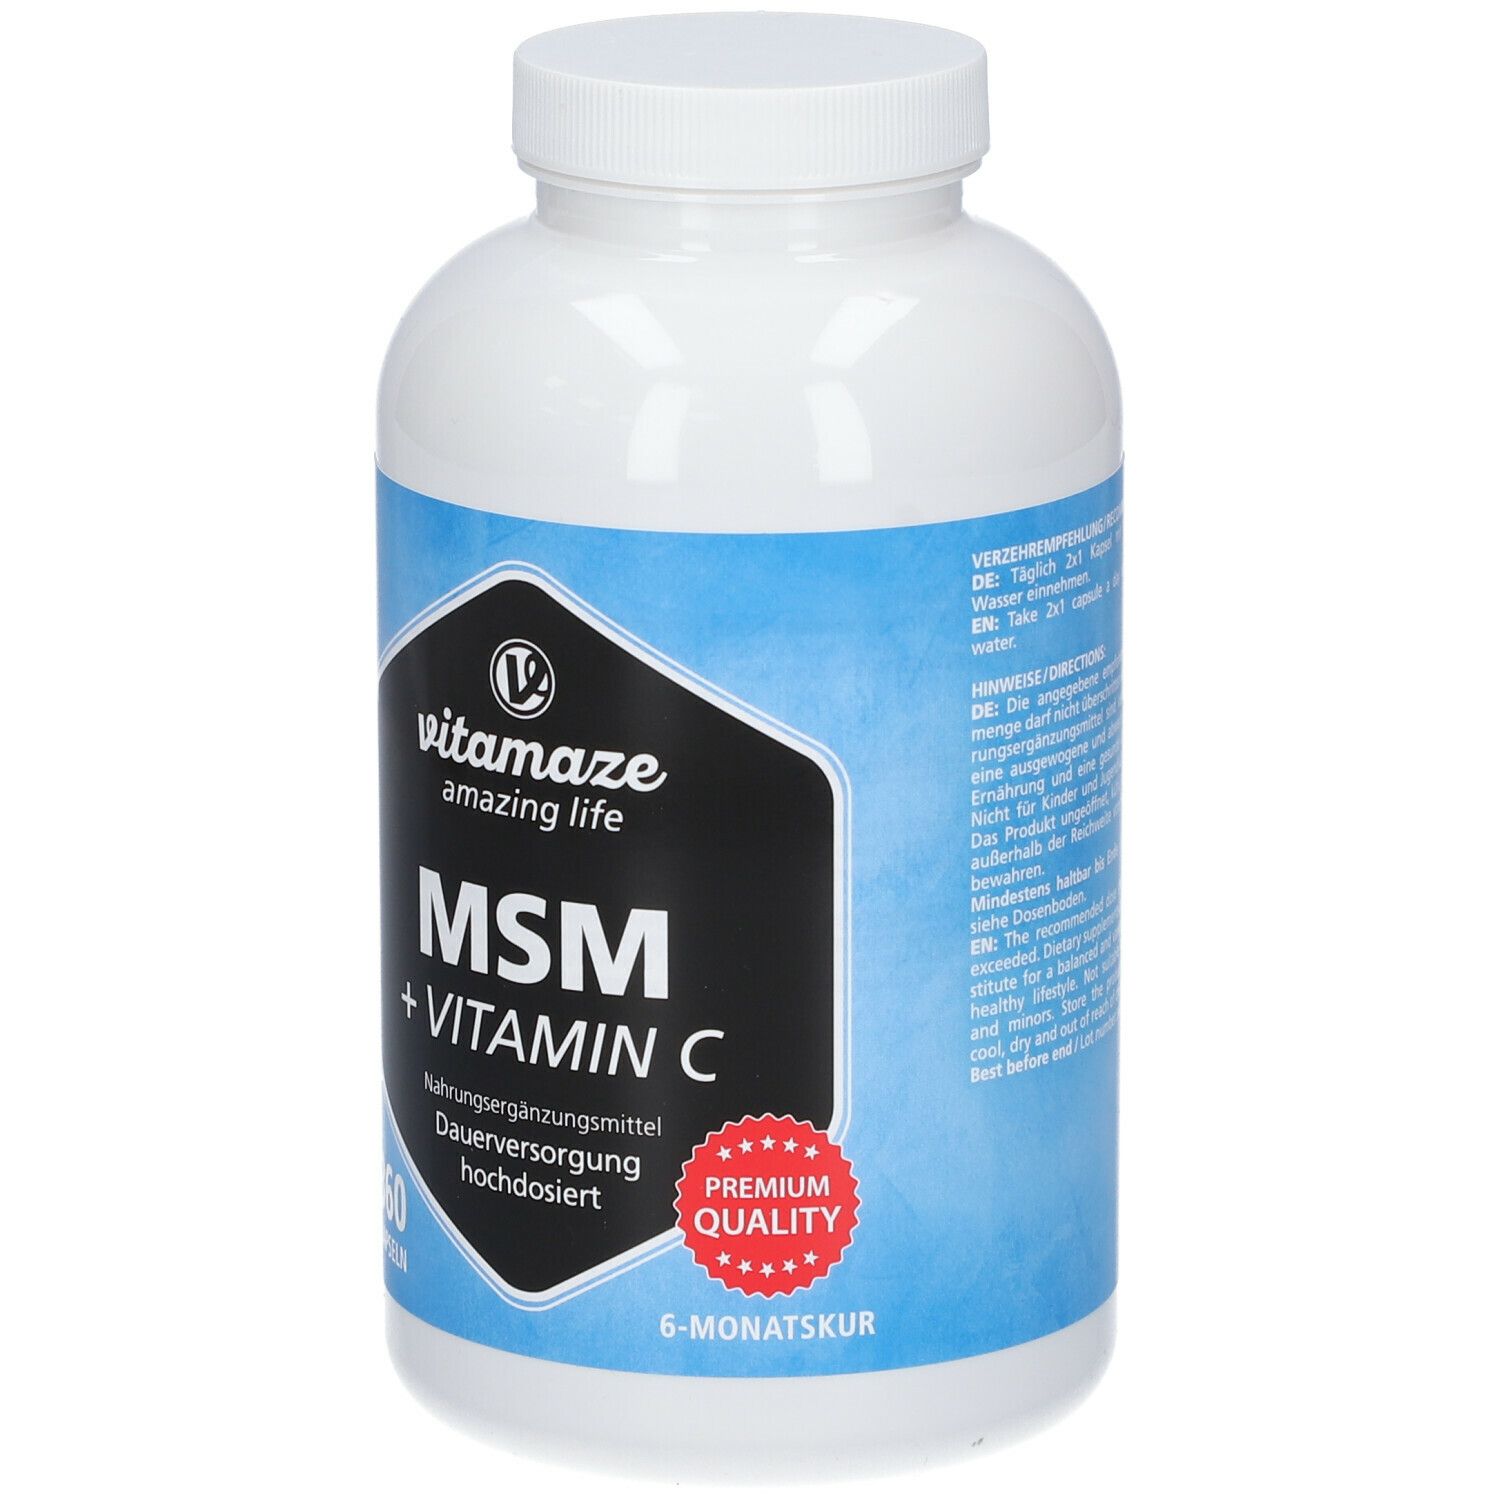 Vitamaze MSM HOCHDOSIERT + Vitamin C